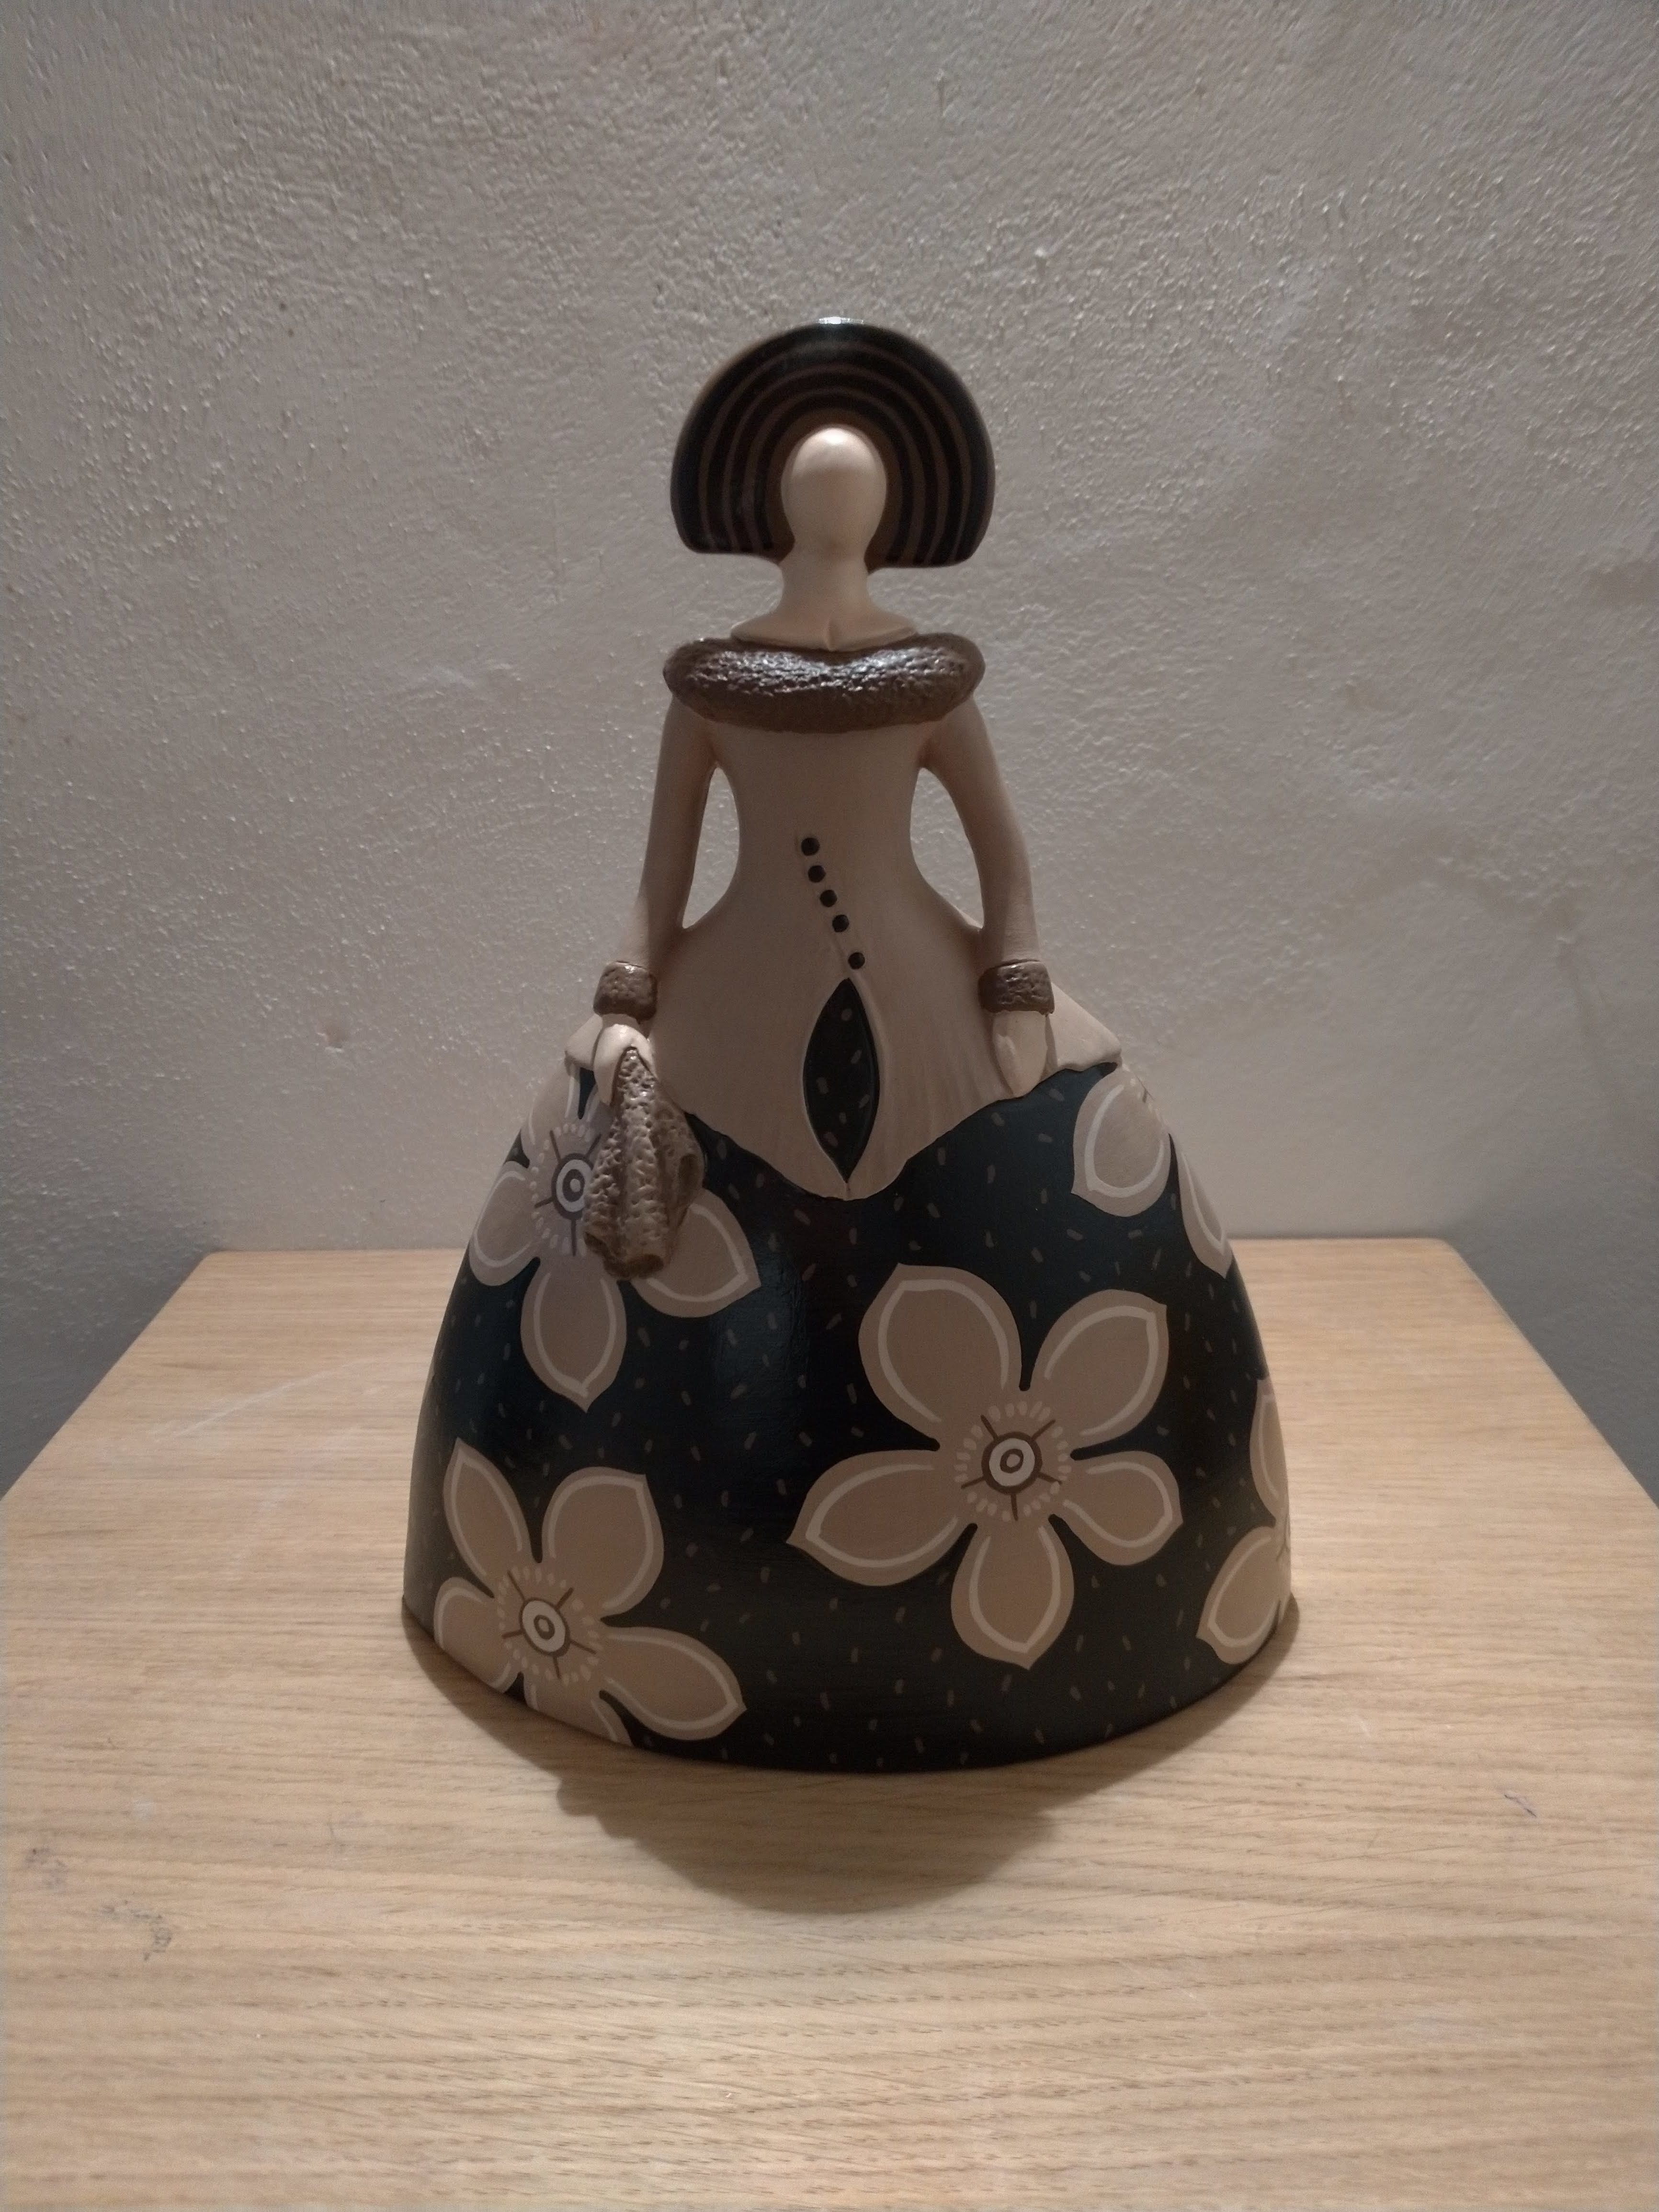 Dama moderna in ceramica / Modern ceramic figurine